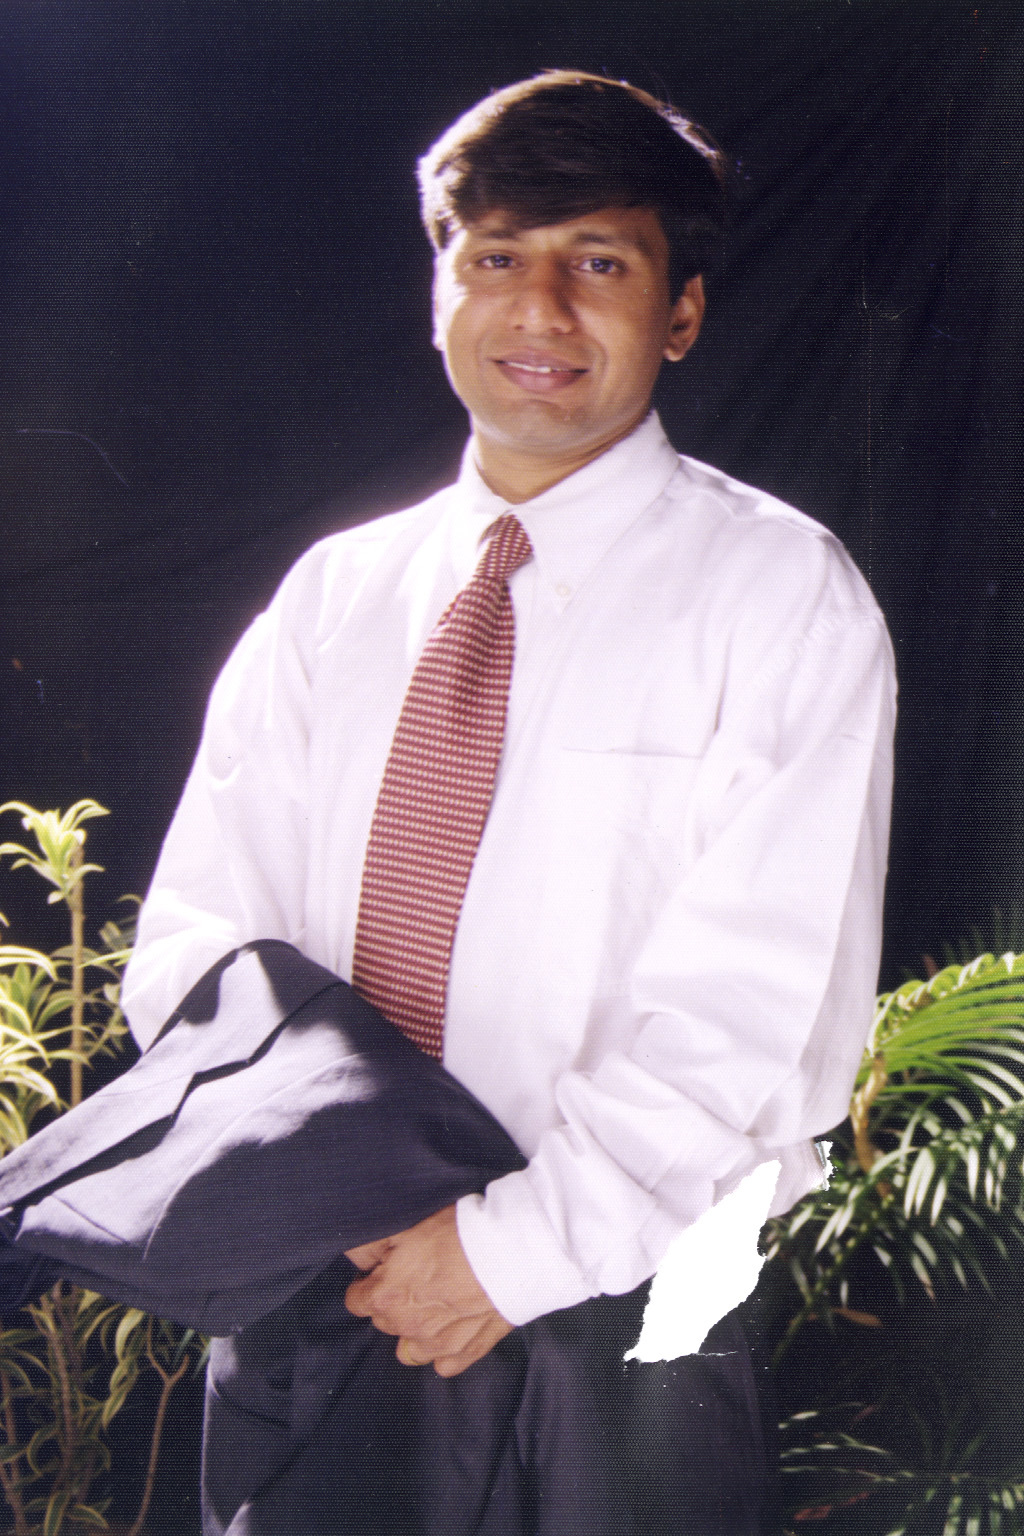 Kamal Patel